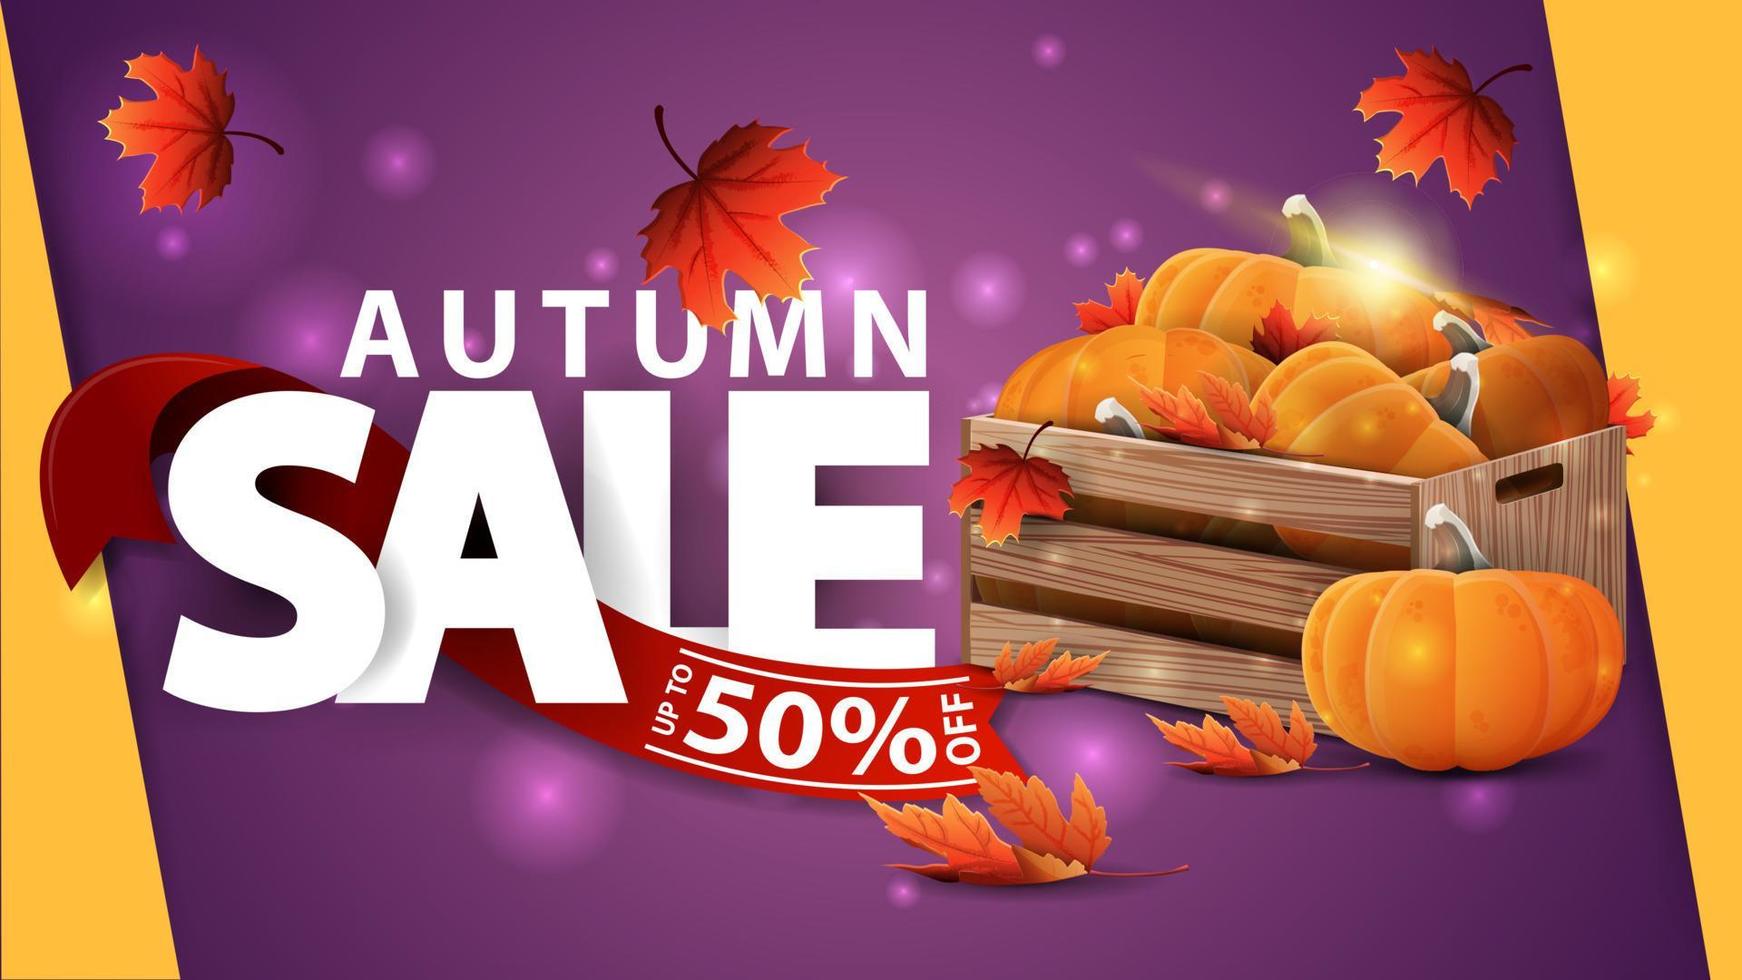 vente d'automne, bannière web violette avec des caisses en bois de citrouilles mûres et des avant-toits d'automne vecteur